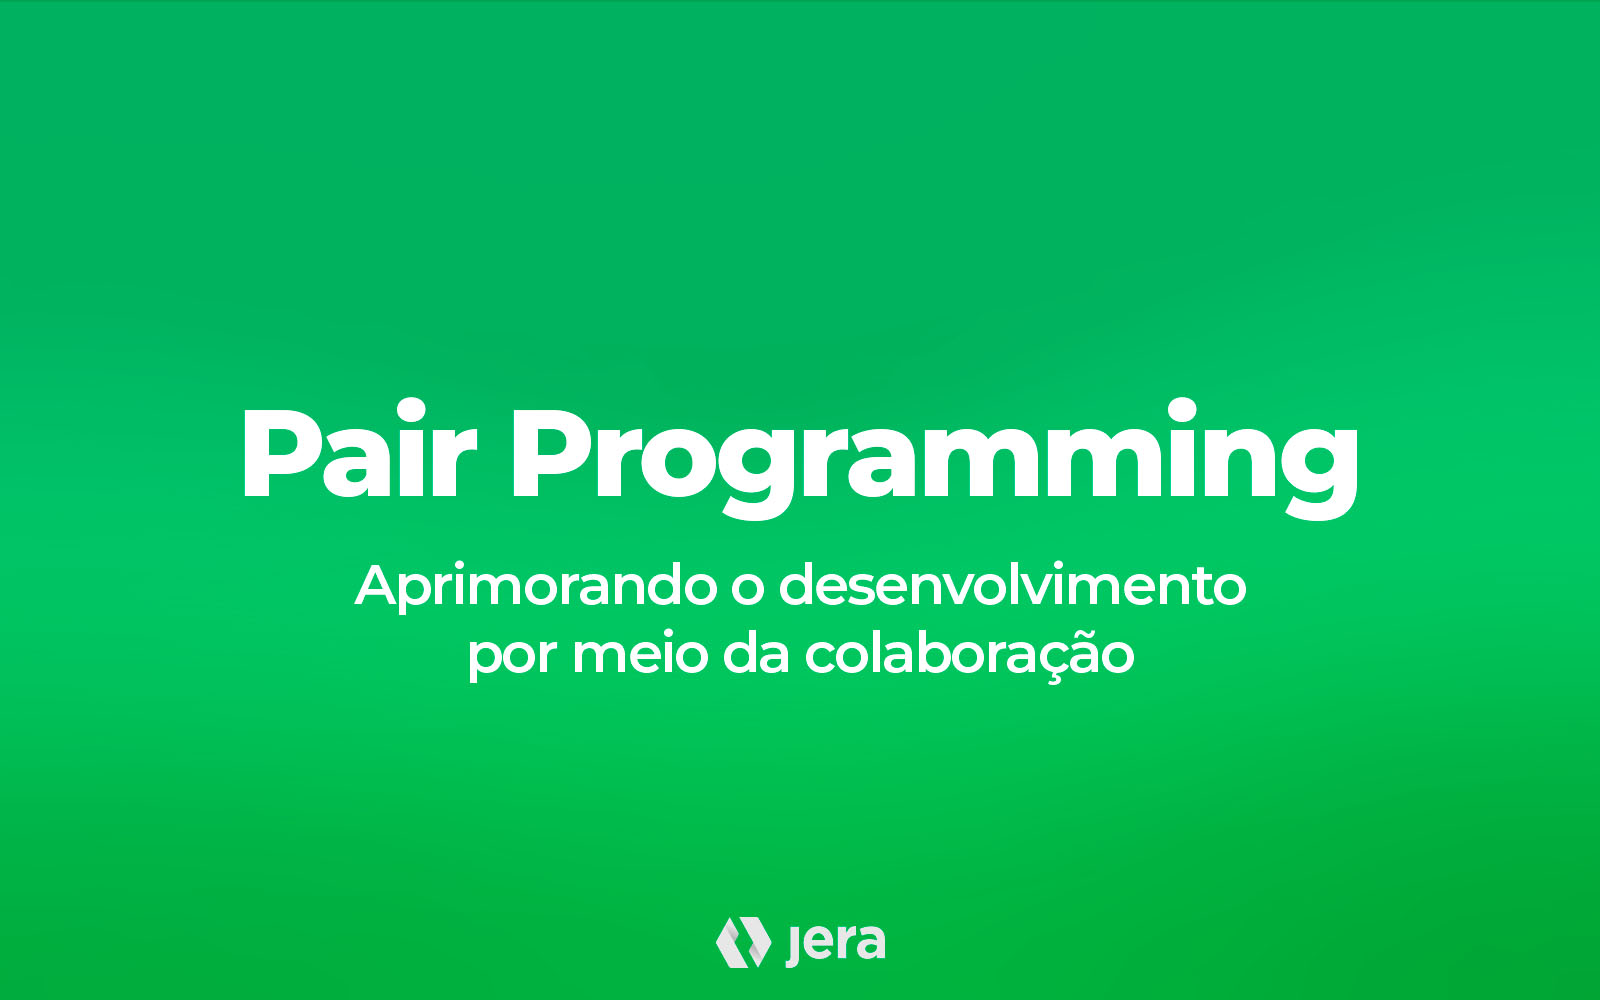 Pair Programming: Aprimorando o desenvolvimento por meio da colaboração